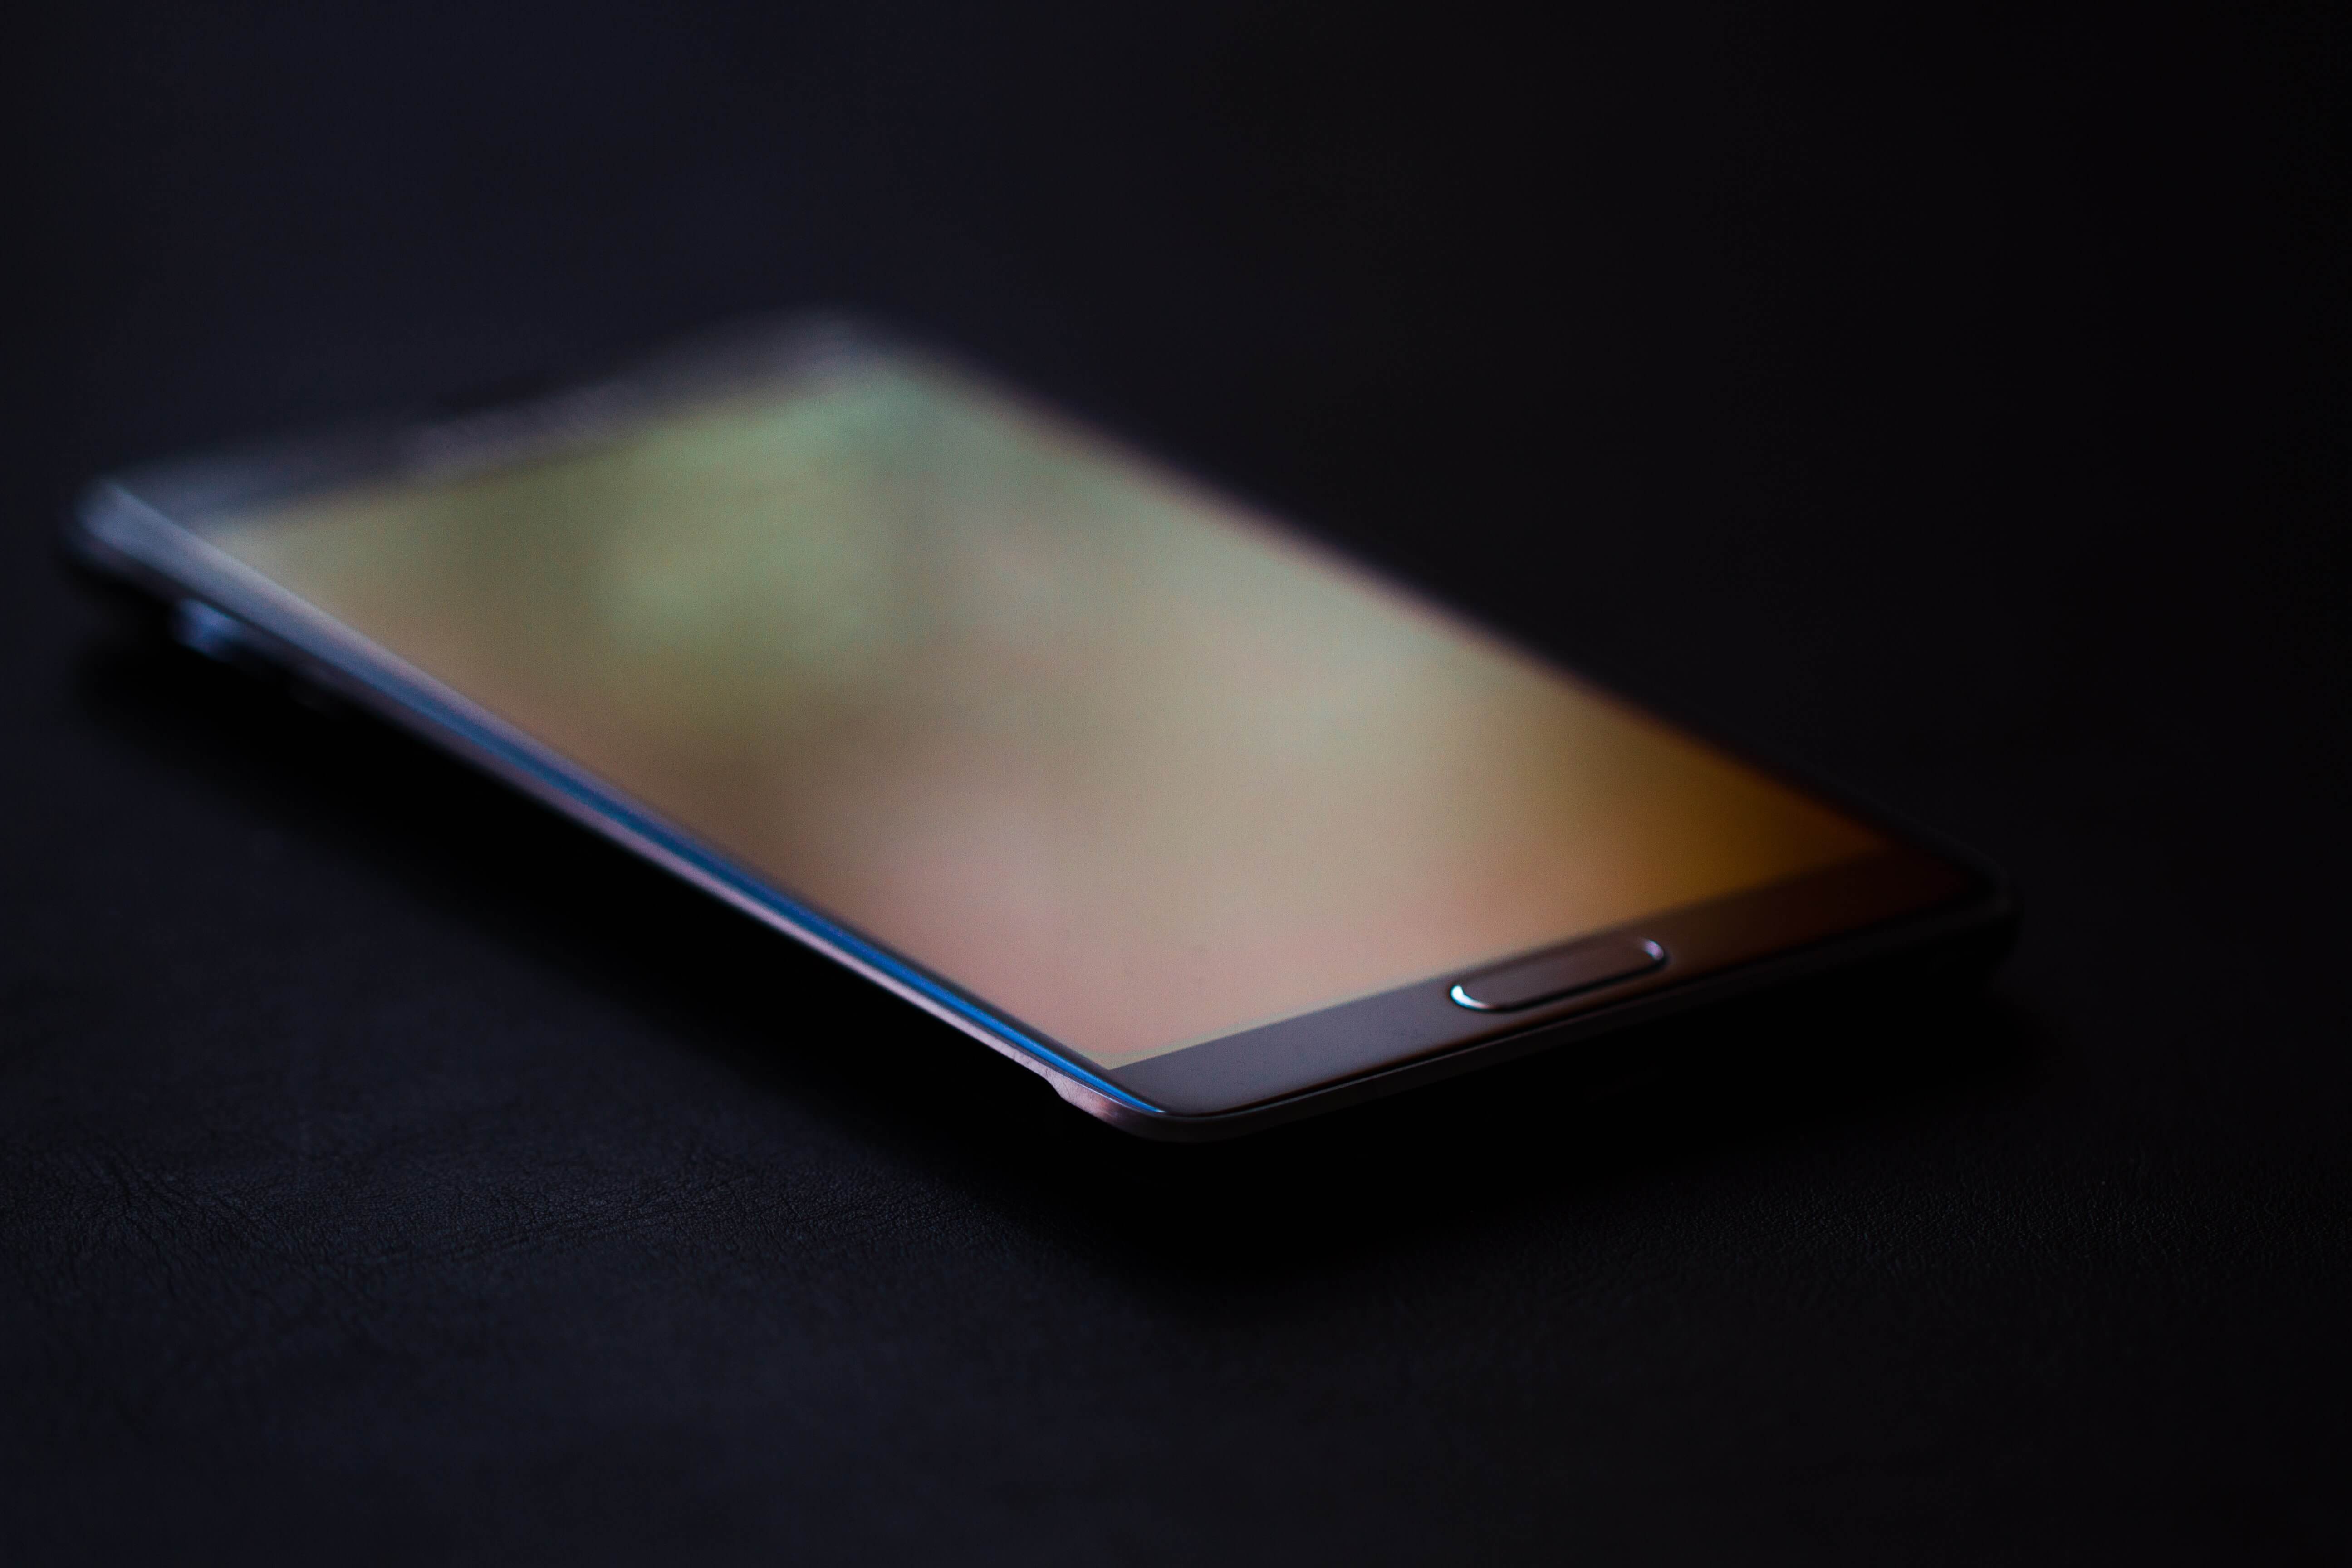 A Samsung phone in a dark background